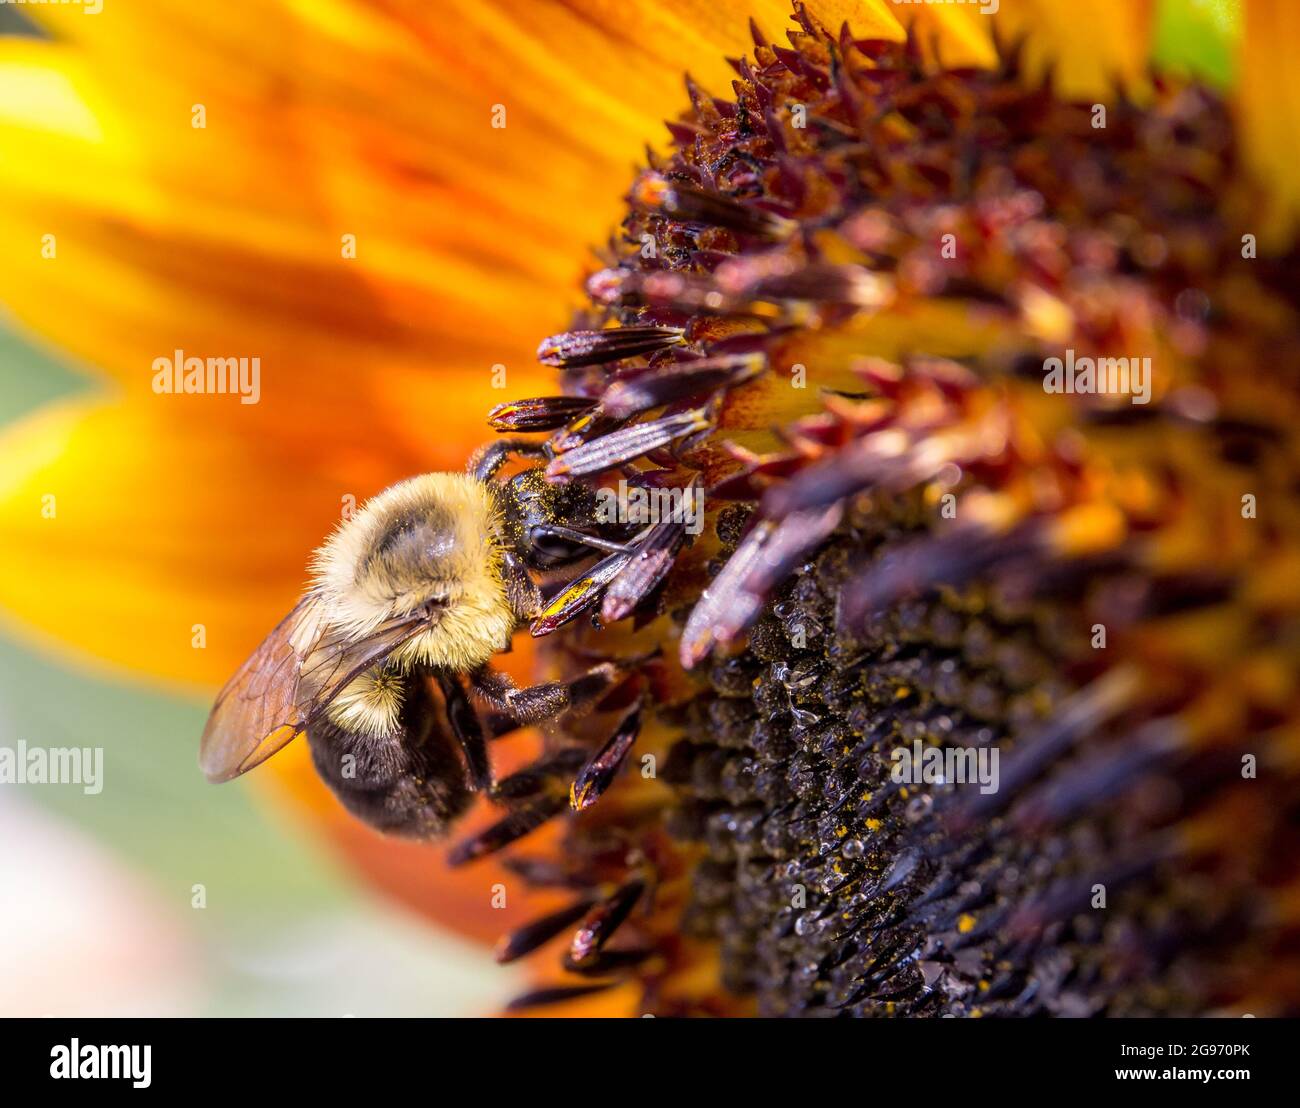 Nahaufnahme einer Hummel, die mit gelben Pollenkörnern an einer Sonnenblume bedeckt ist. Stockfoto